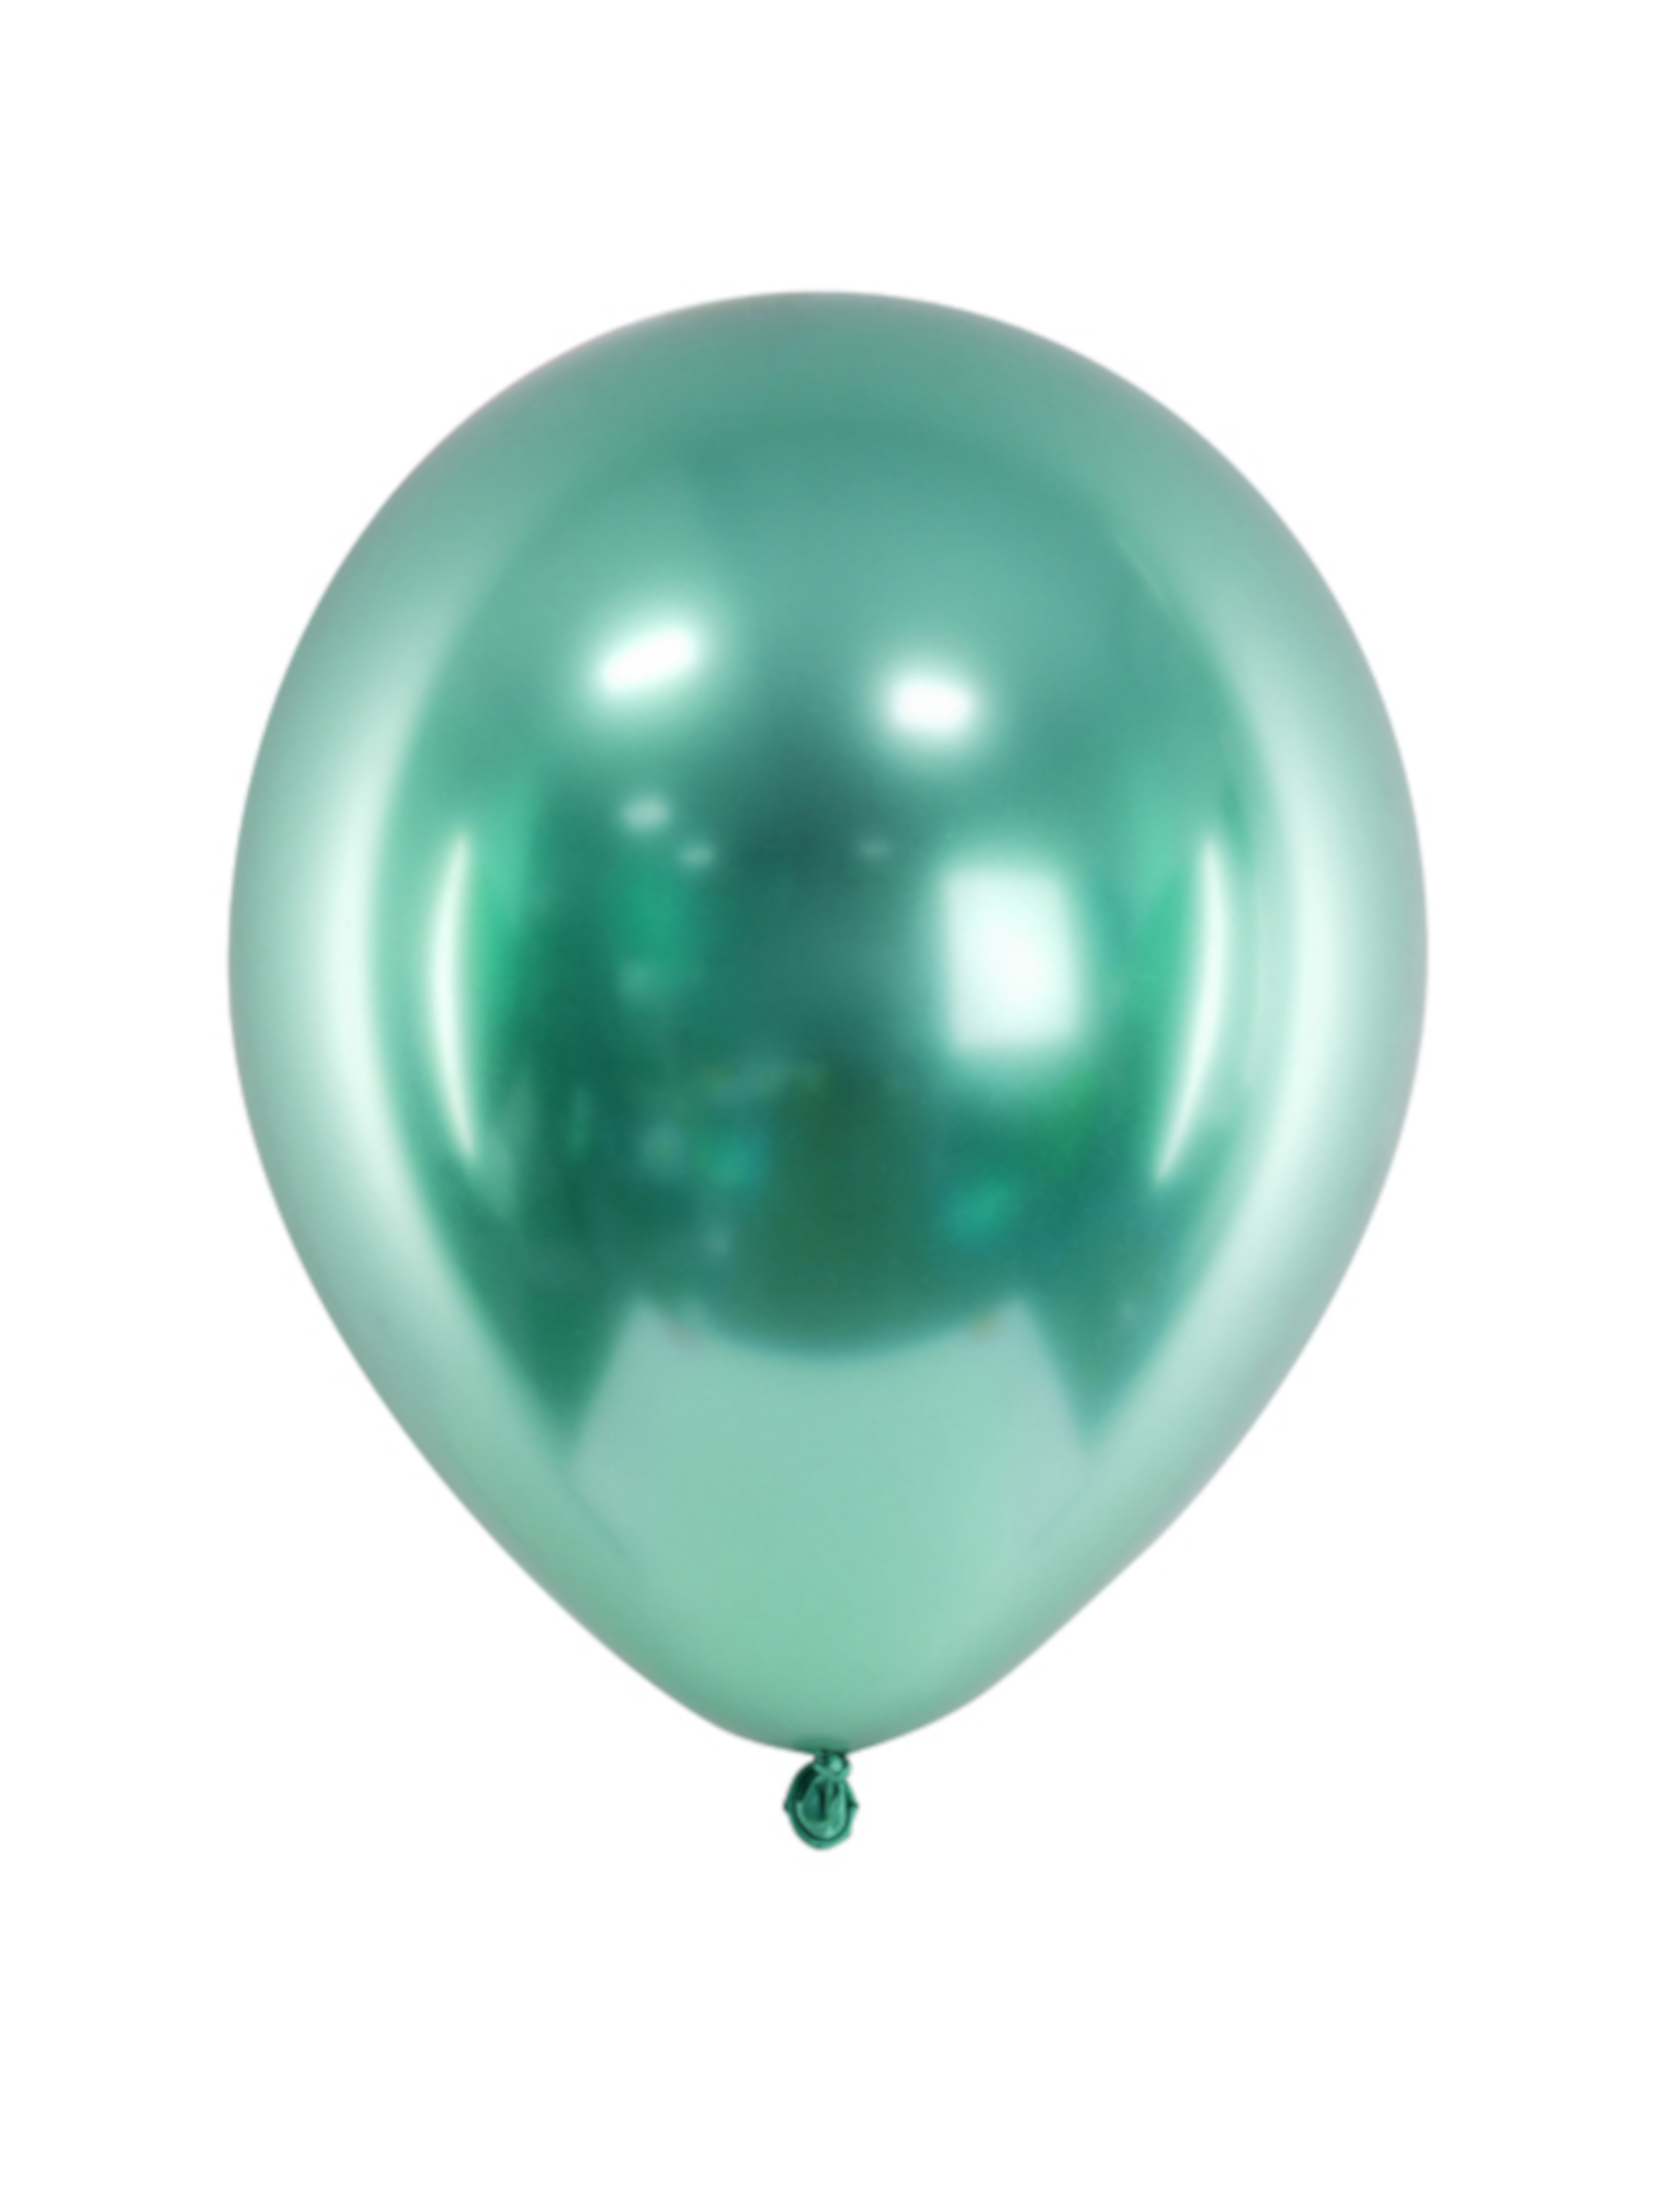 Balony Glossy 30 cm - butelkowo zielone  50 sztuk